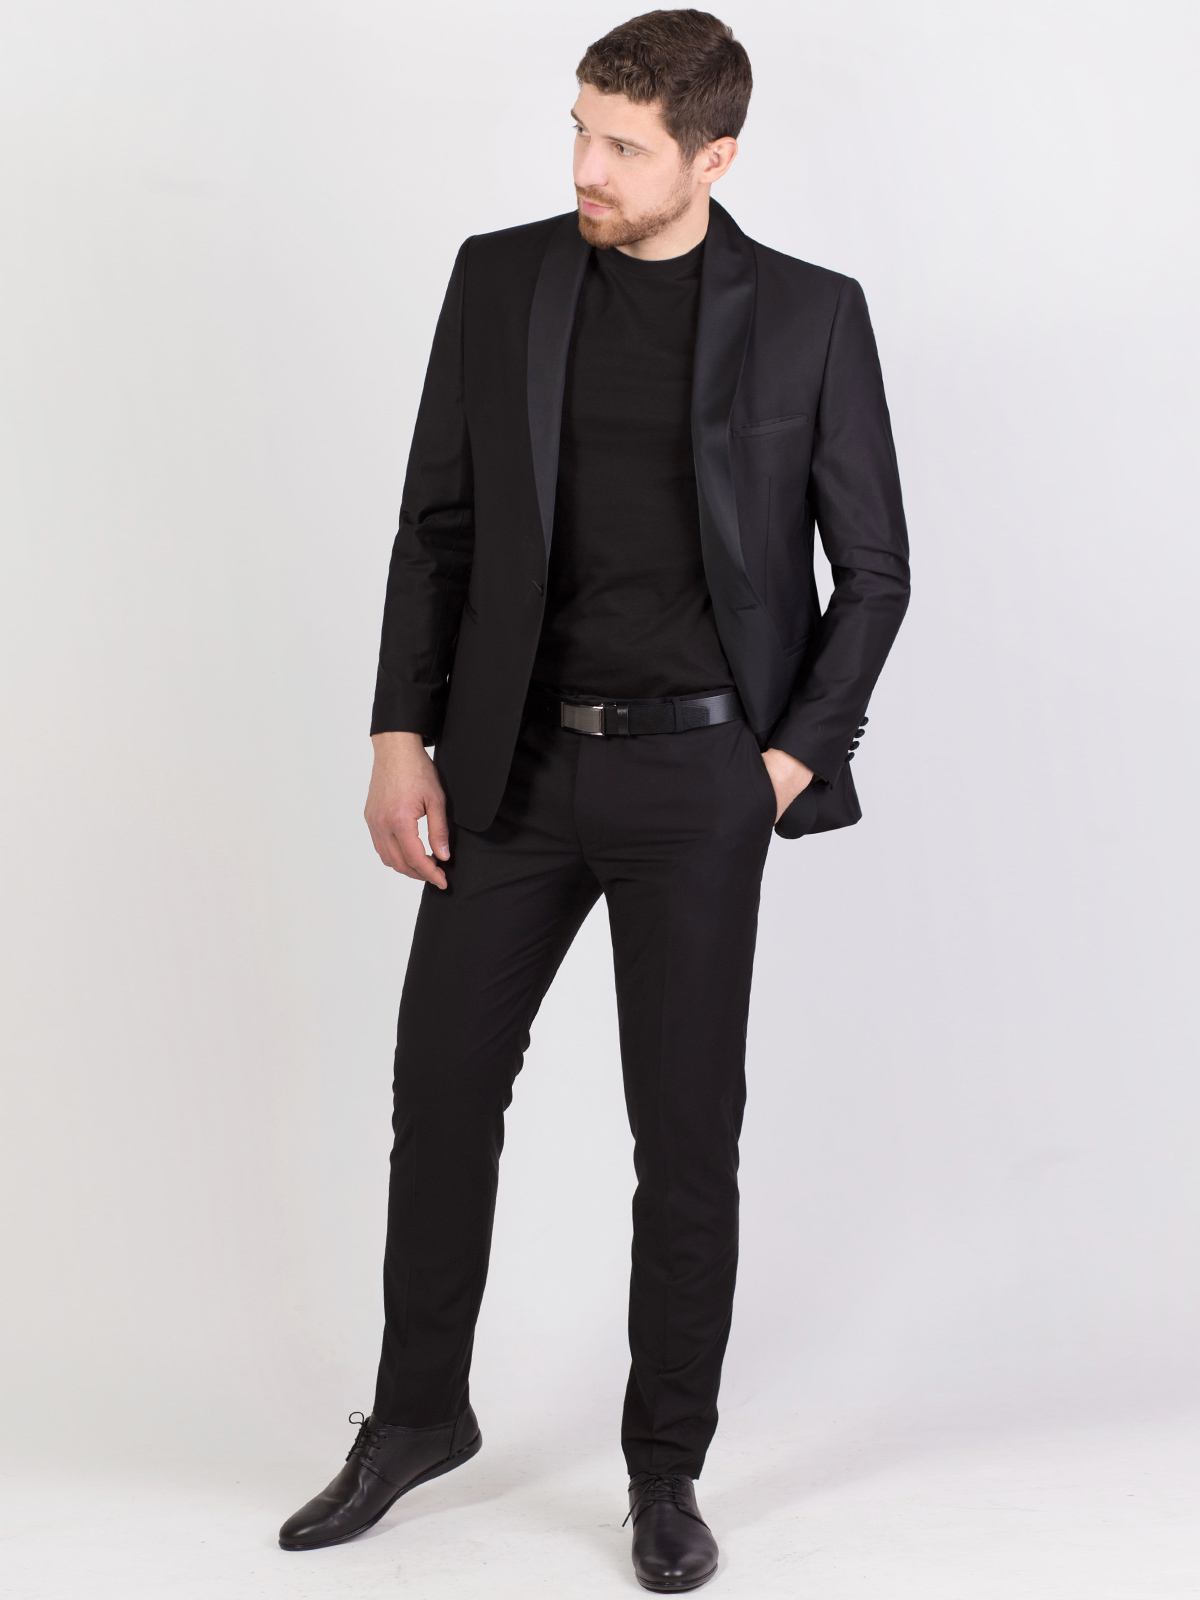 Μαύρο κοστούμι με σατέν κασκόλ με γιακά - 68050 € 164.79 img3